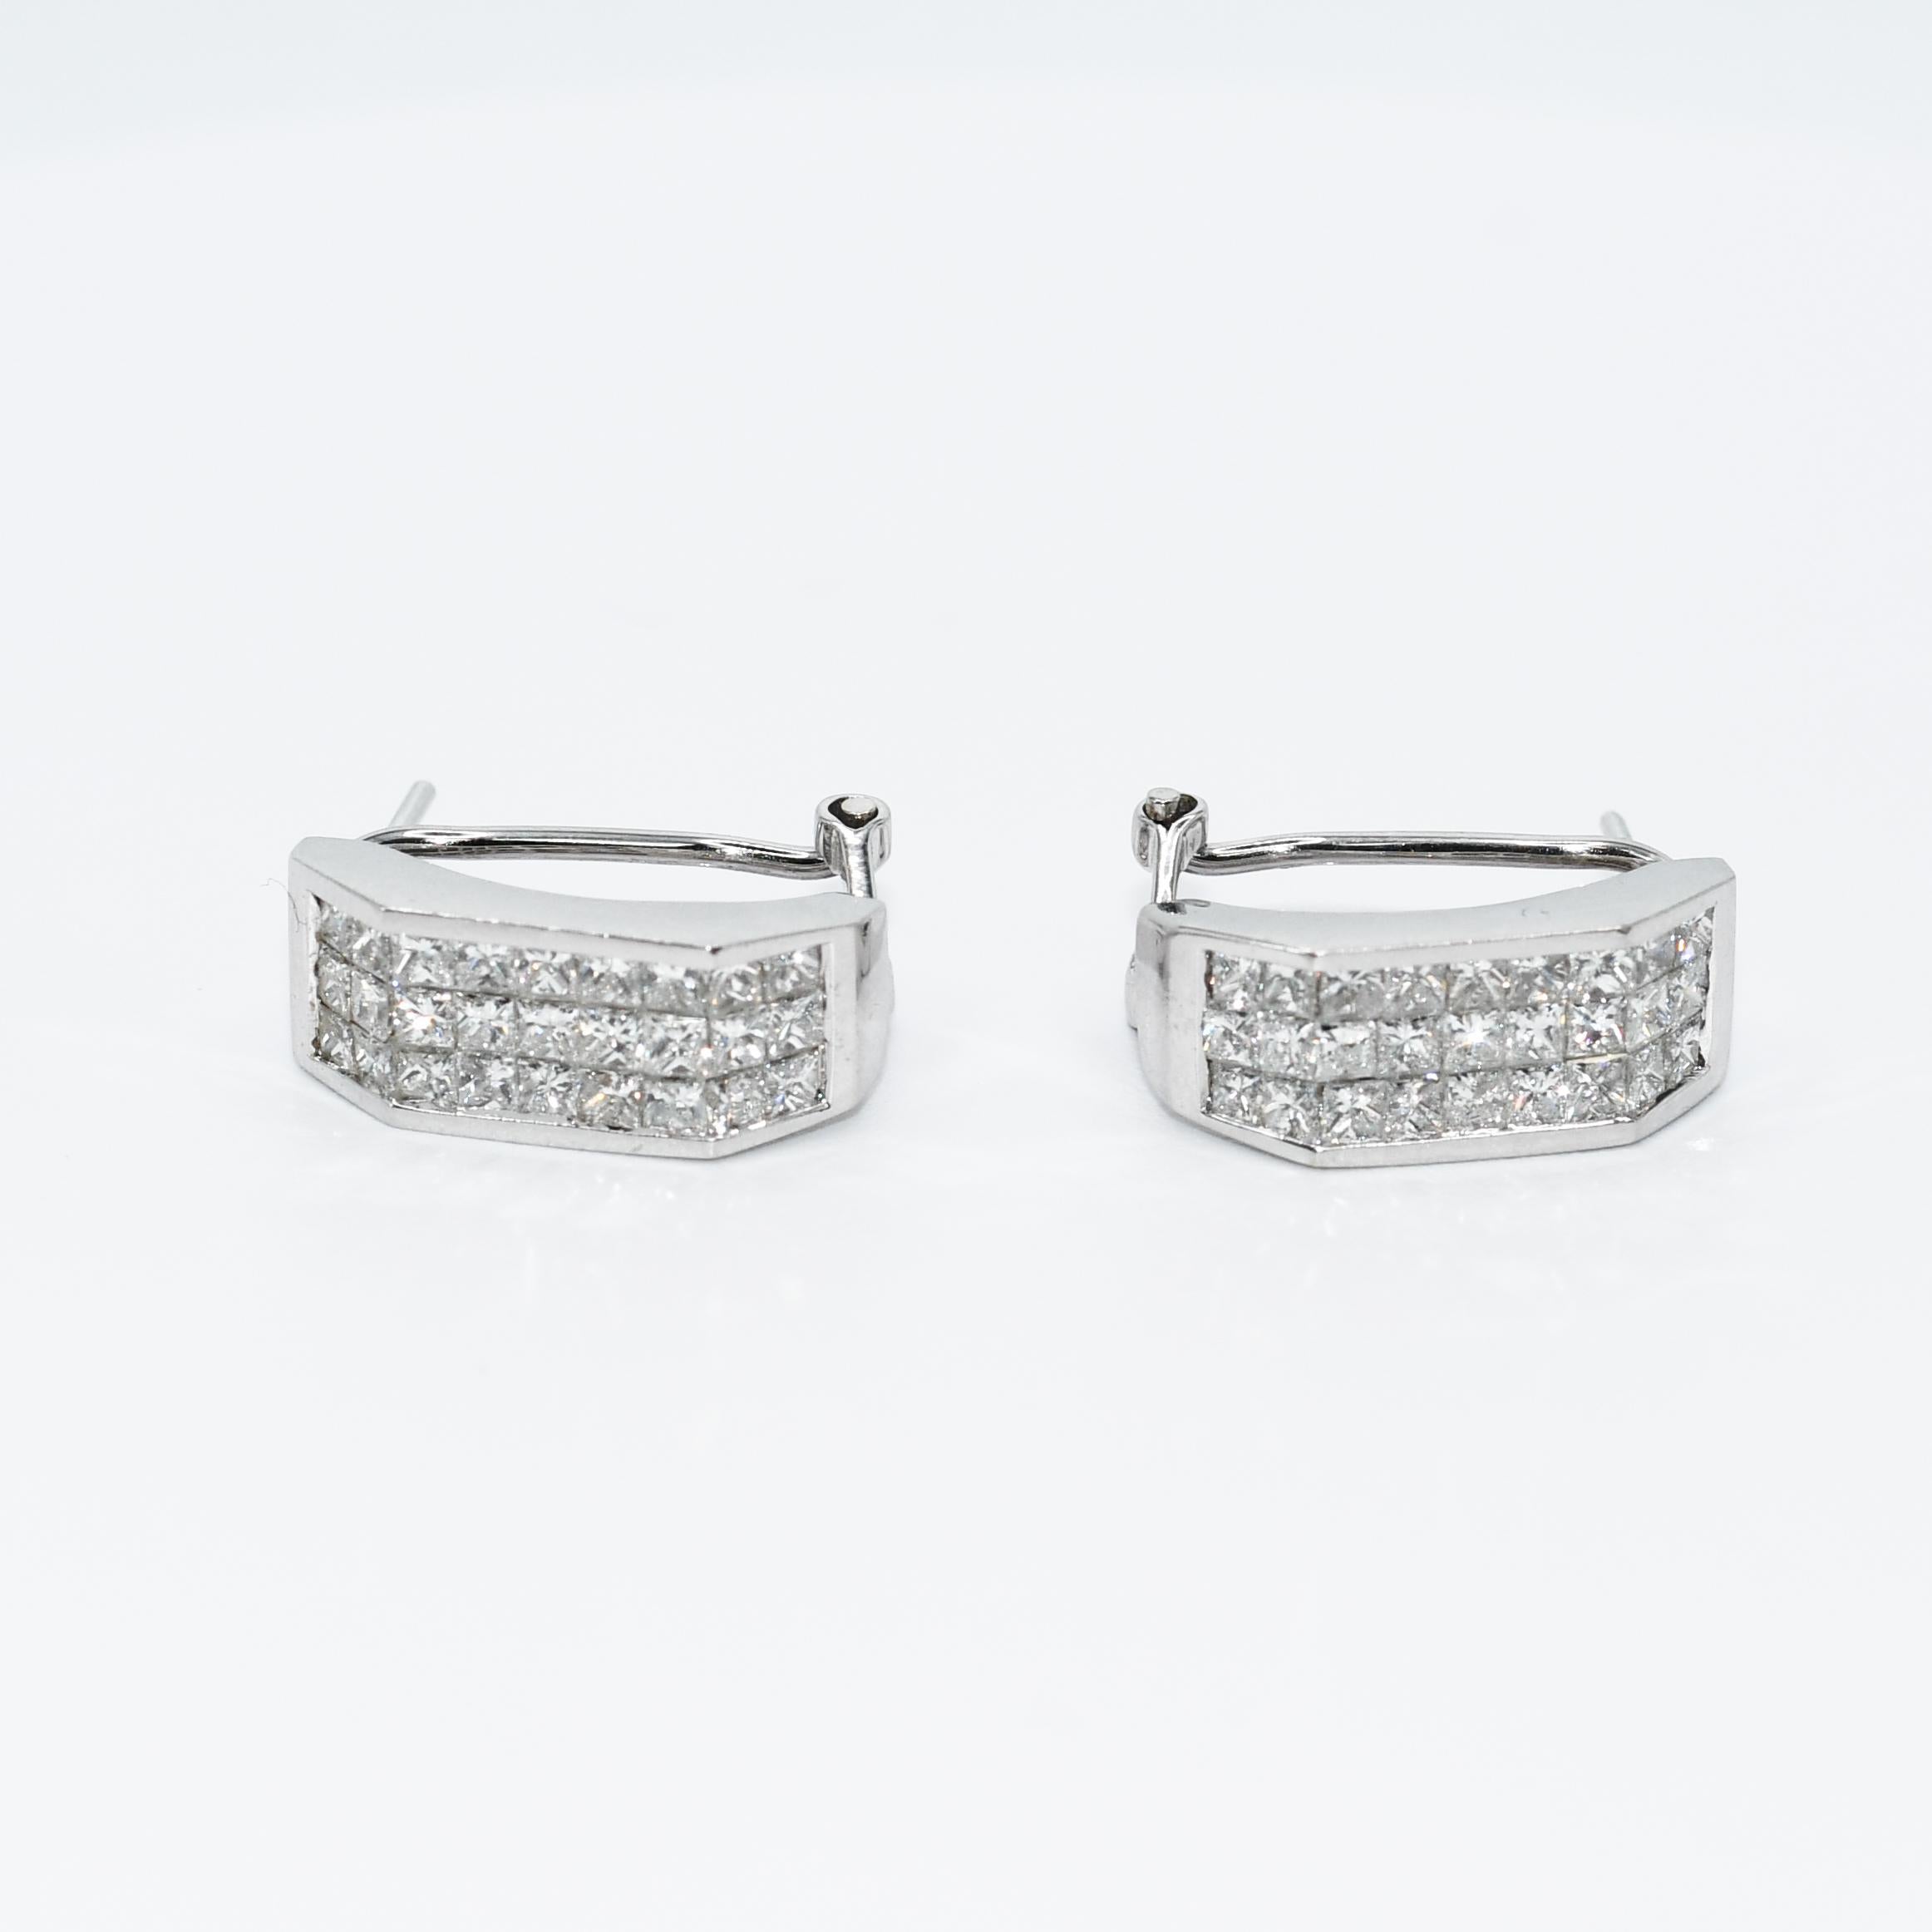 Women's 18K White Gold Diamond Earrings, 1.88tdw, 6.9g